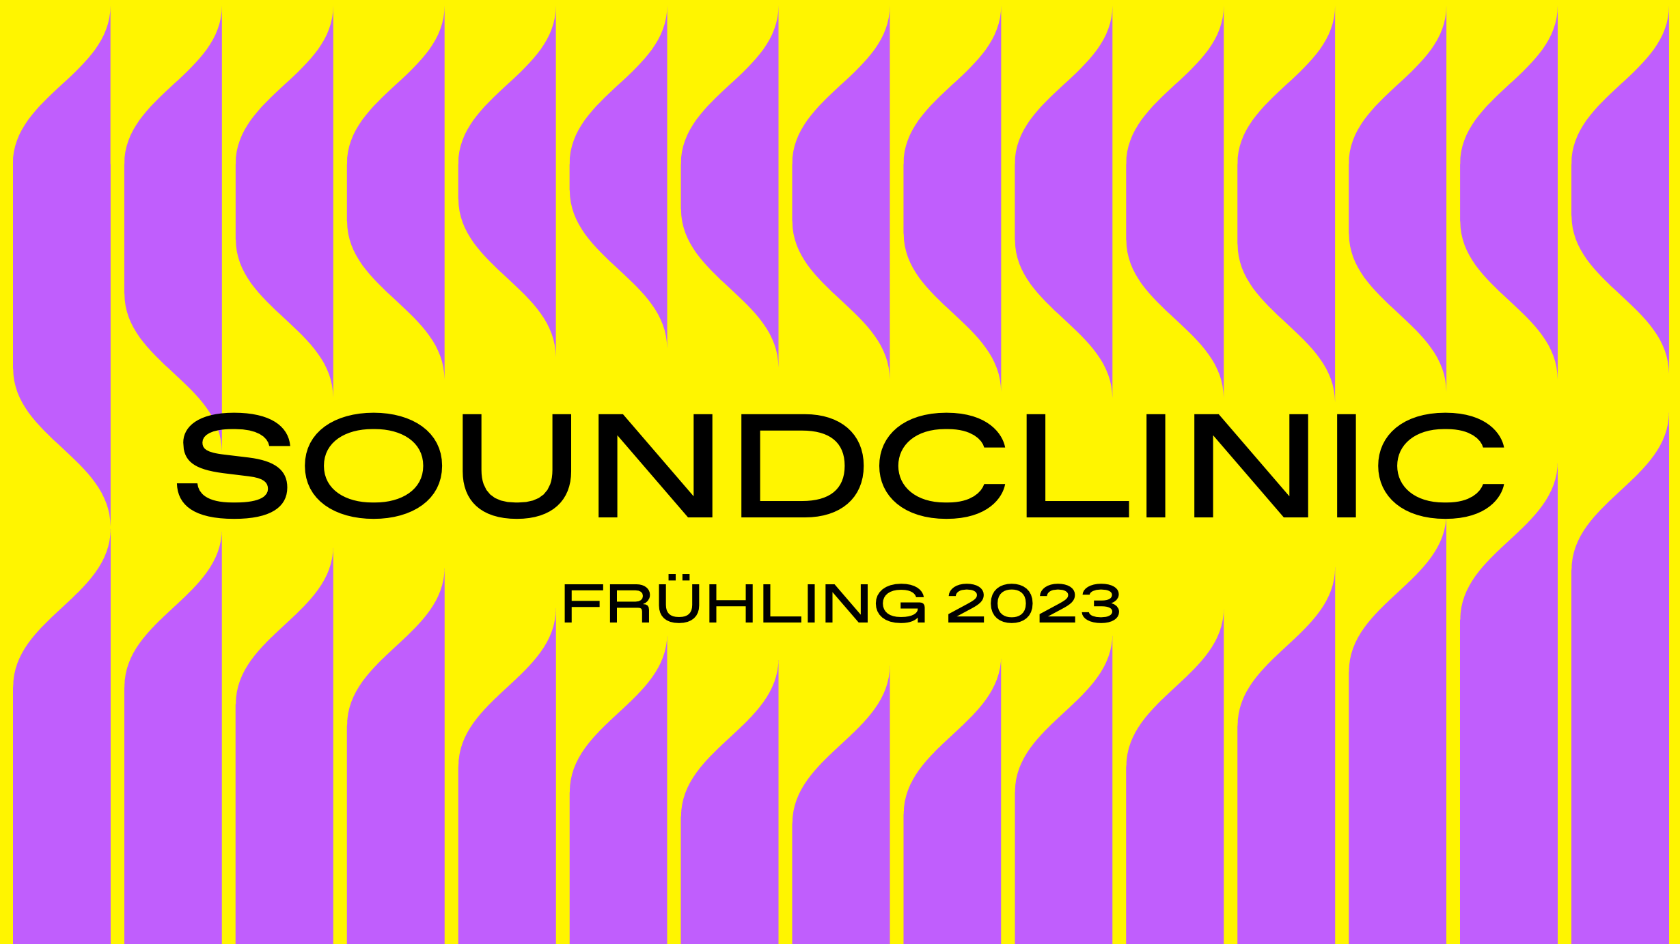 soundclinic-fru-hling-23-banner